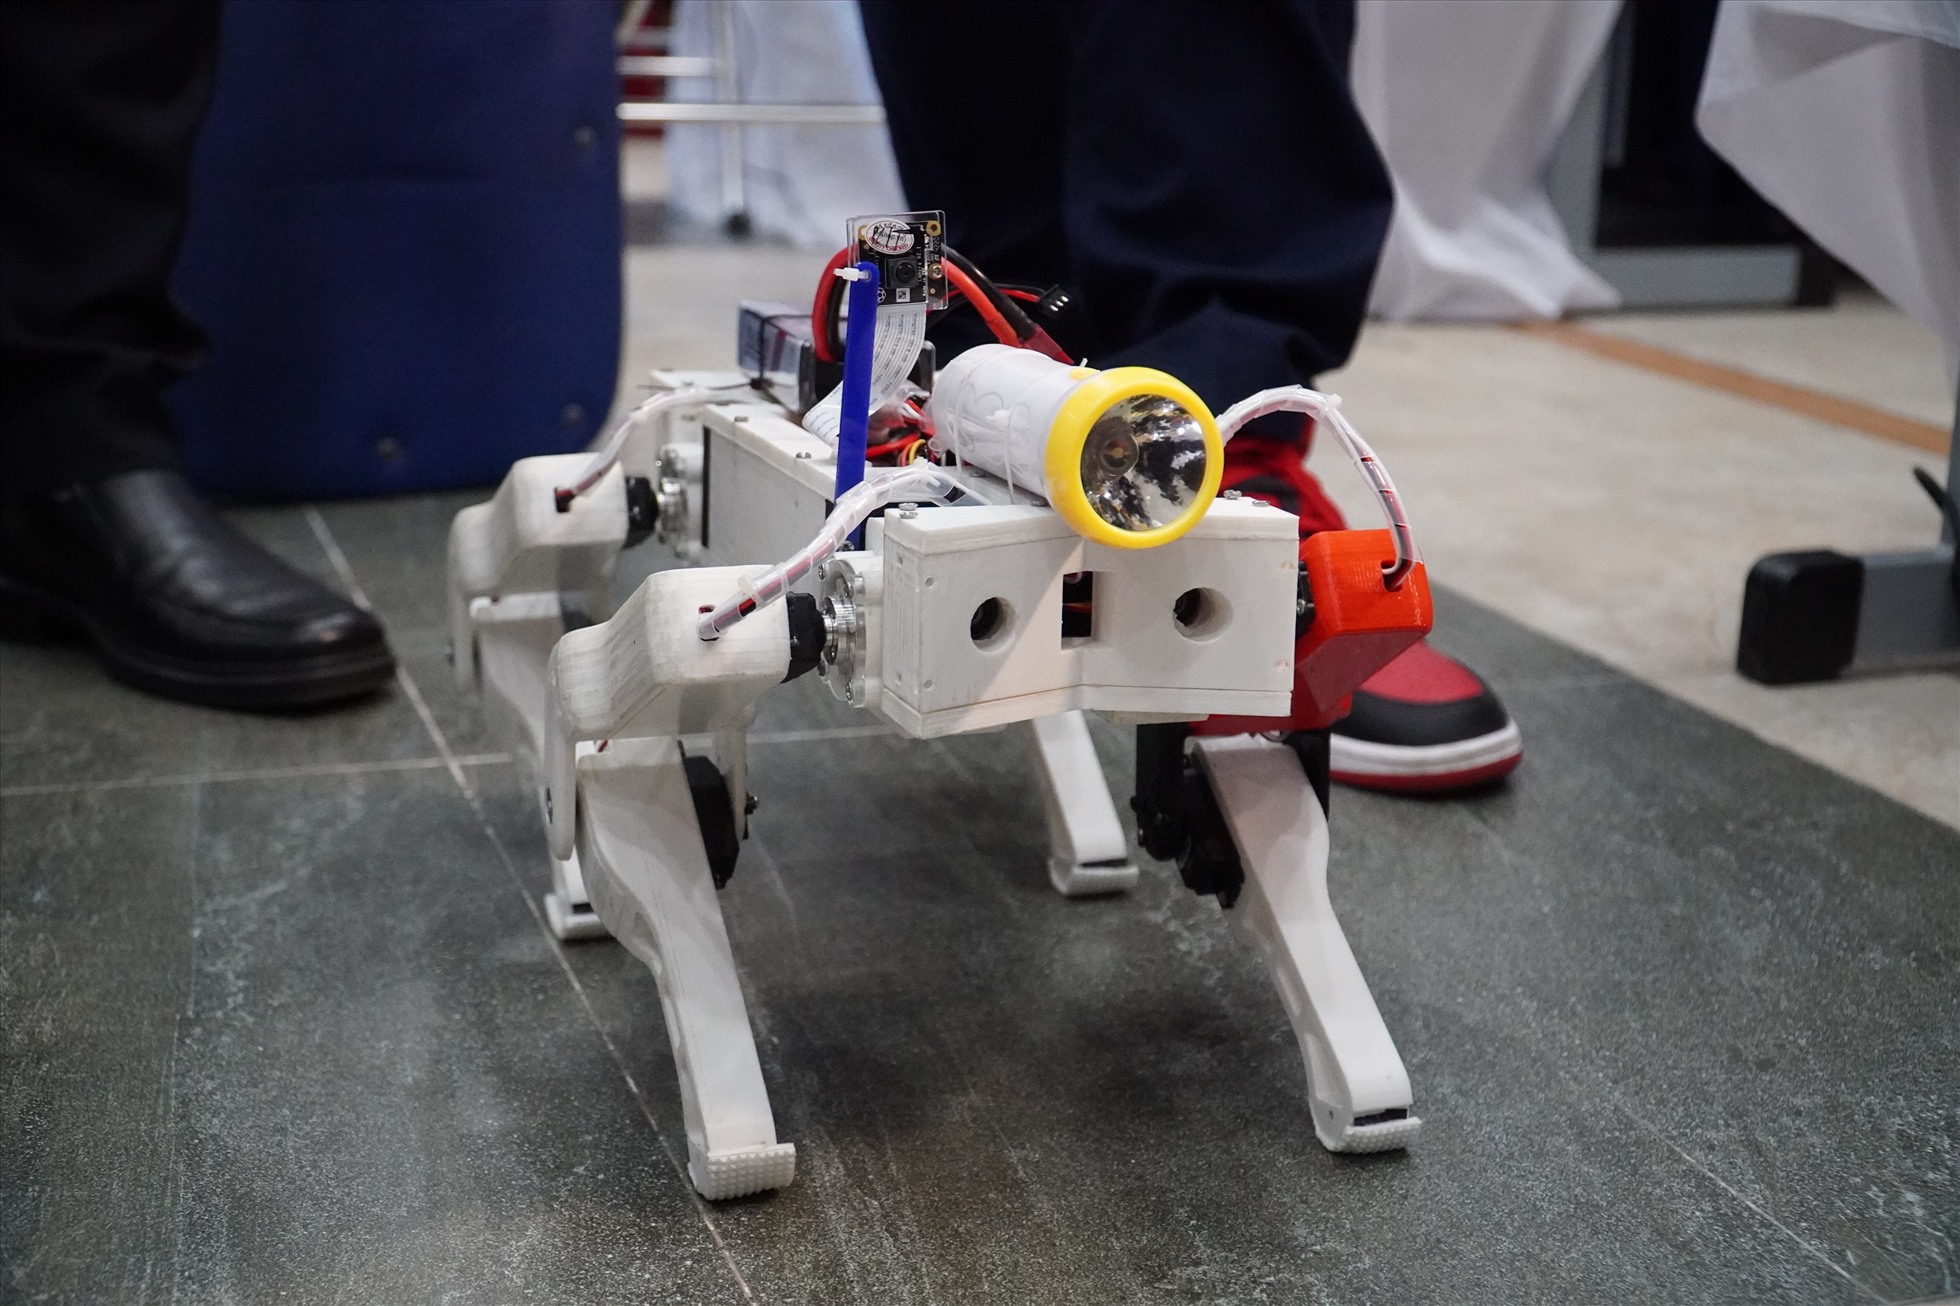 Sản phẩm dự thi mô hình robot 4 chân hỗ trợ tìm kiếm, cứu hộ người trong vùng bị sạt lở. Ảnh: Ngọc Lê